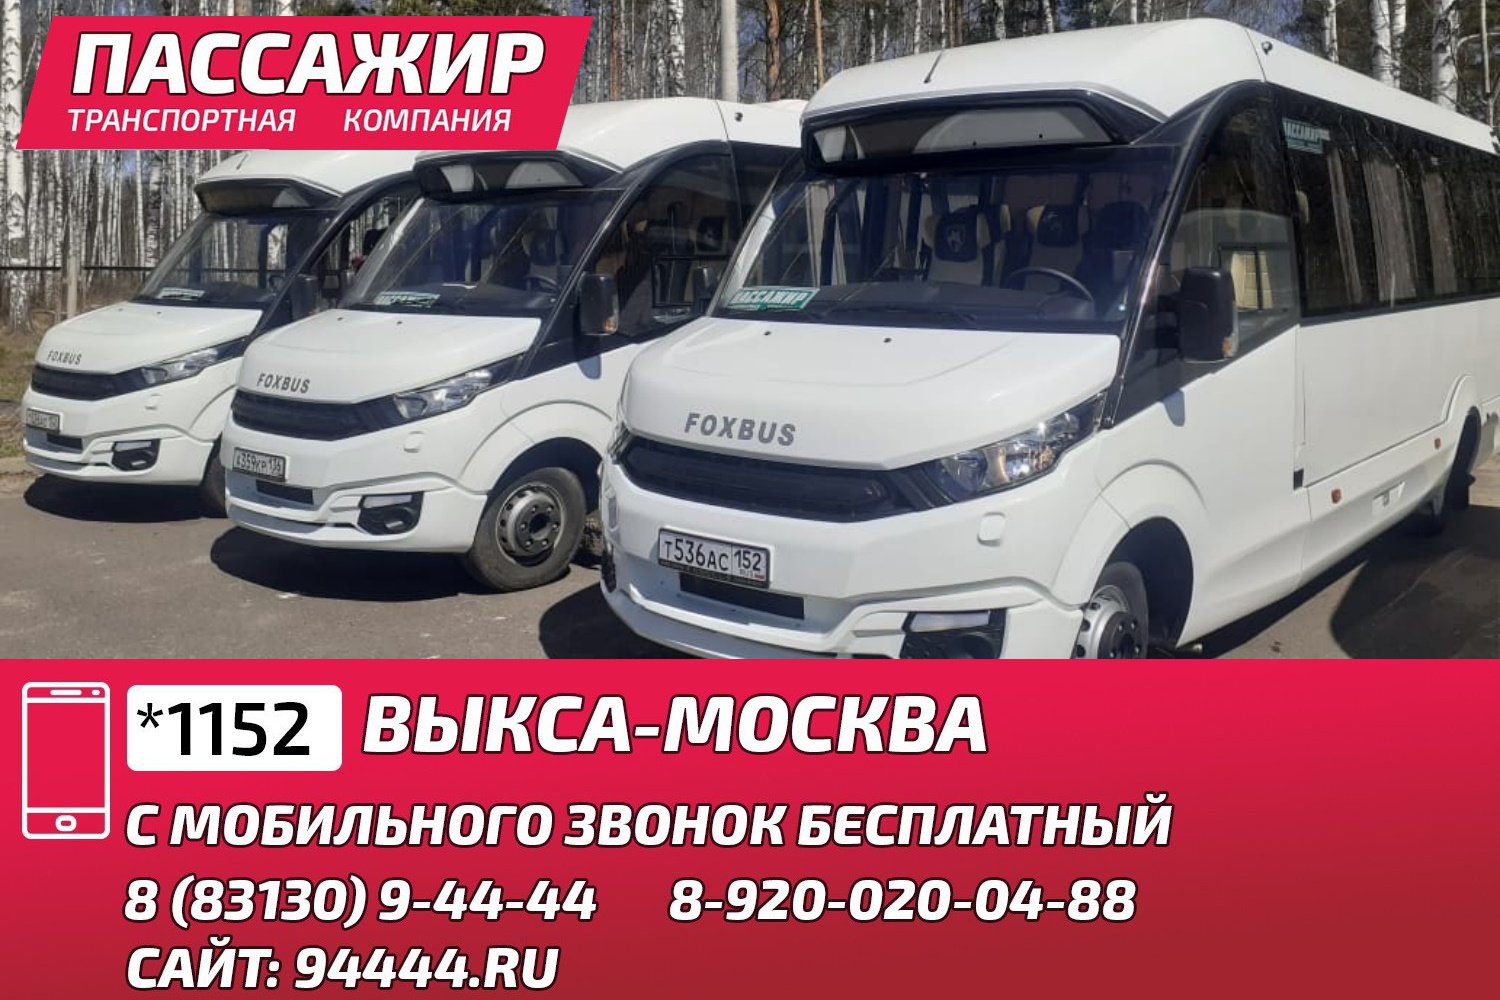 «Пассажир»: комфортные перевозки Выкса-Москва для вас и ваших близких